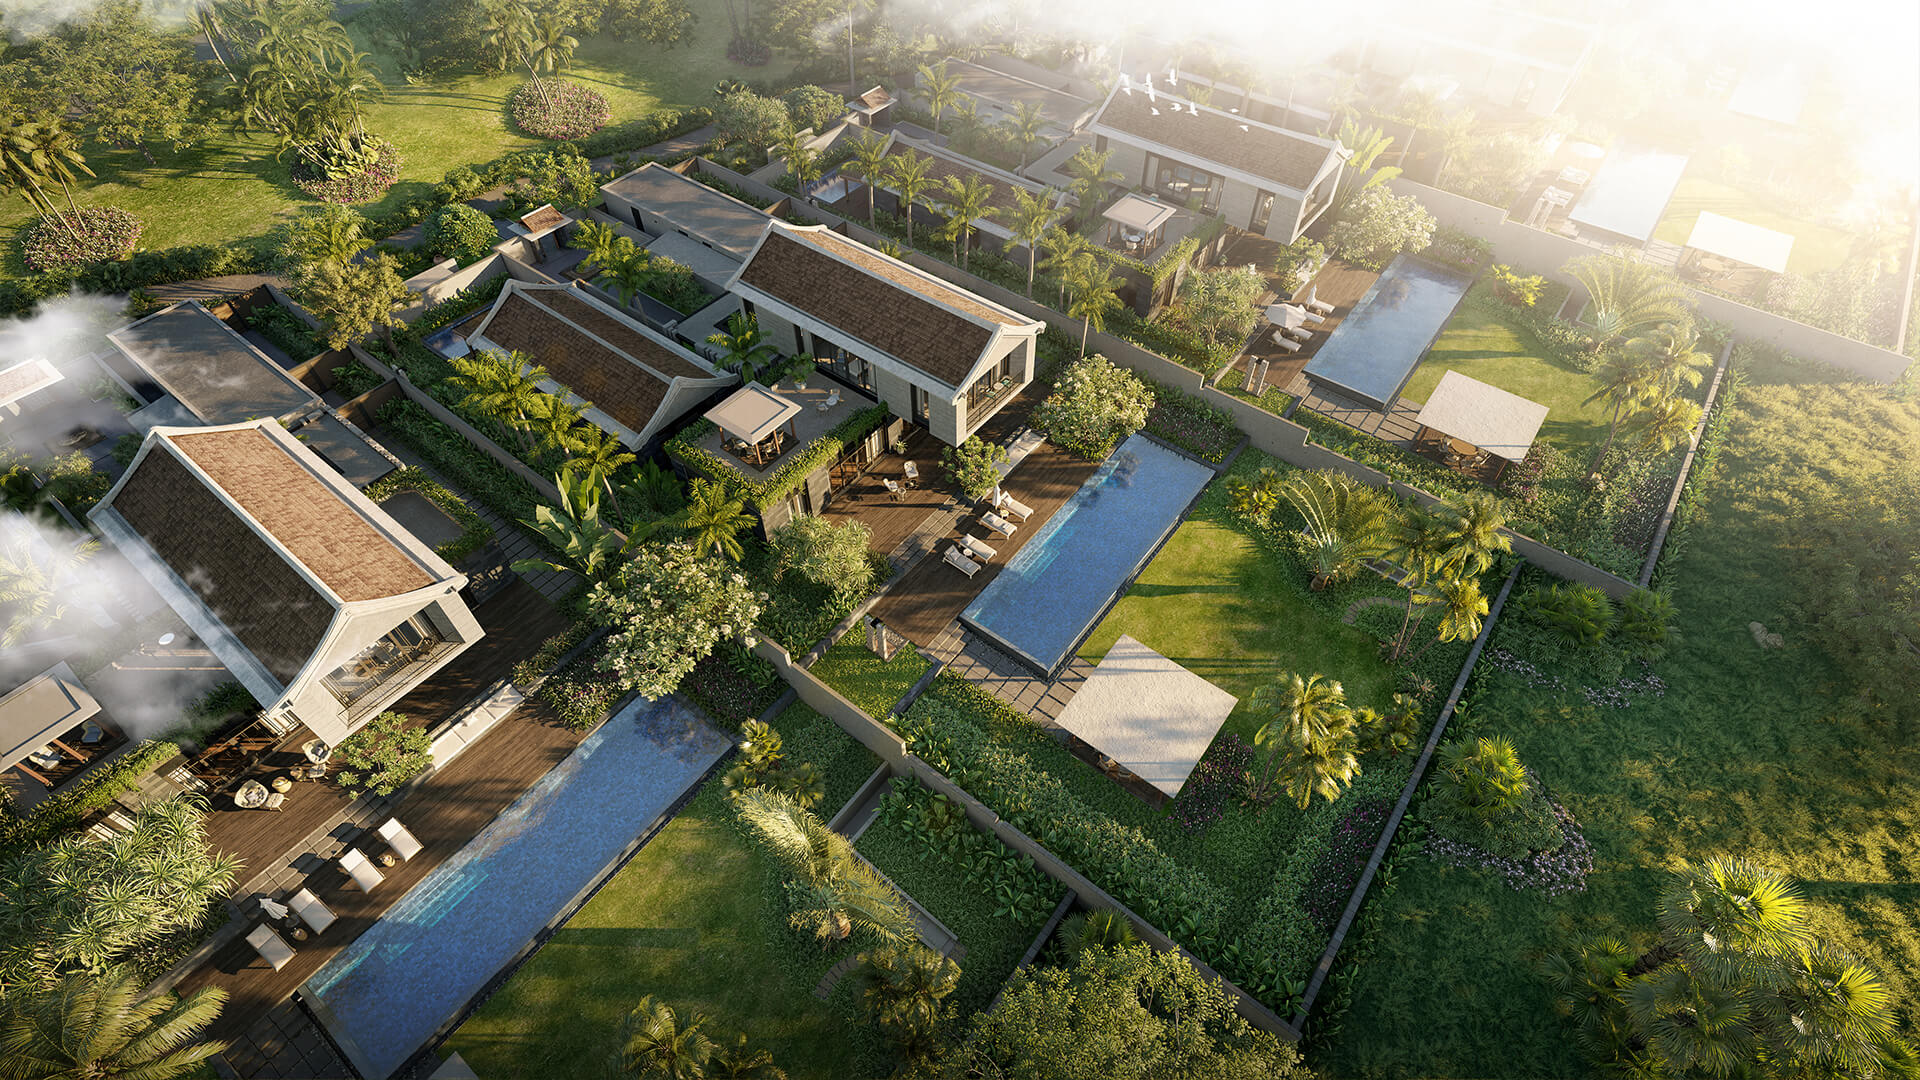 Không gian trong lành của dự án Park Hyatt Phu Quoc không chỉ mang đến cho cư dân tương lai một ngôi nhà đẹp, tiện nghi mà cả niềm tự hào là công trình xanh - thân thiện với môi trường. Ảnh minh họa